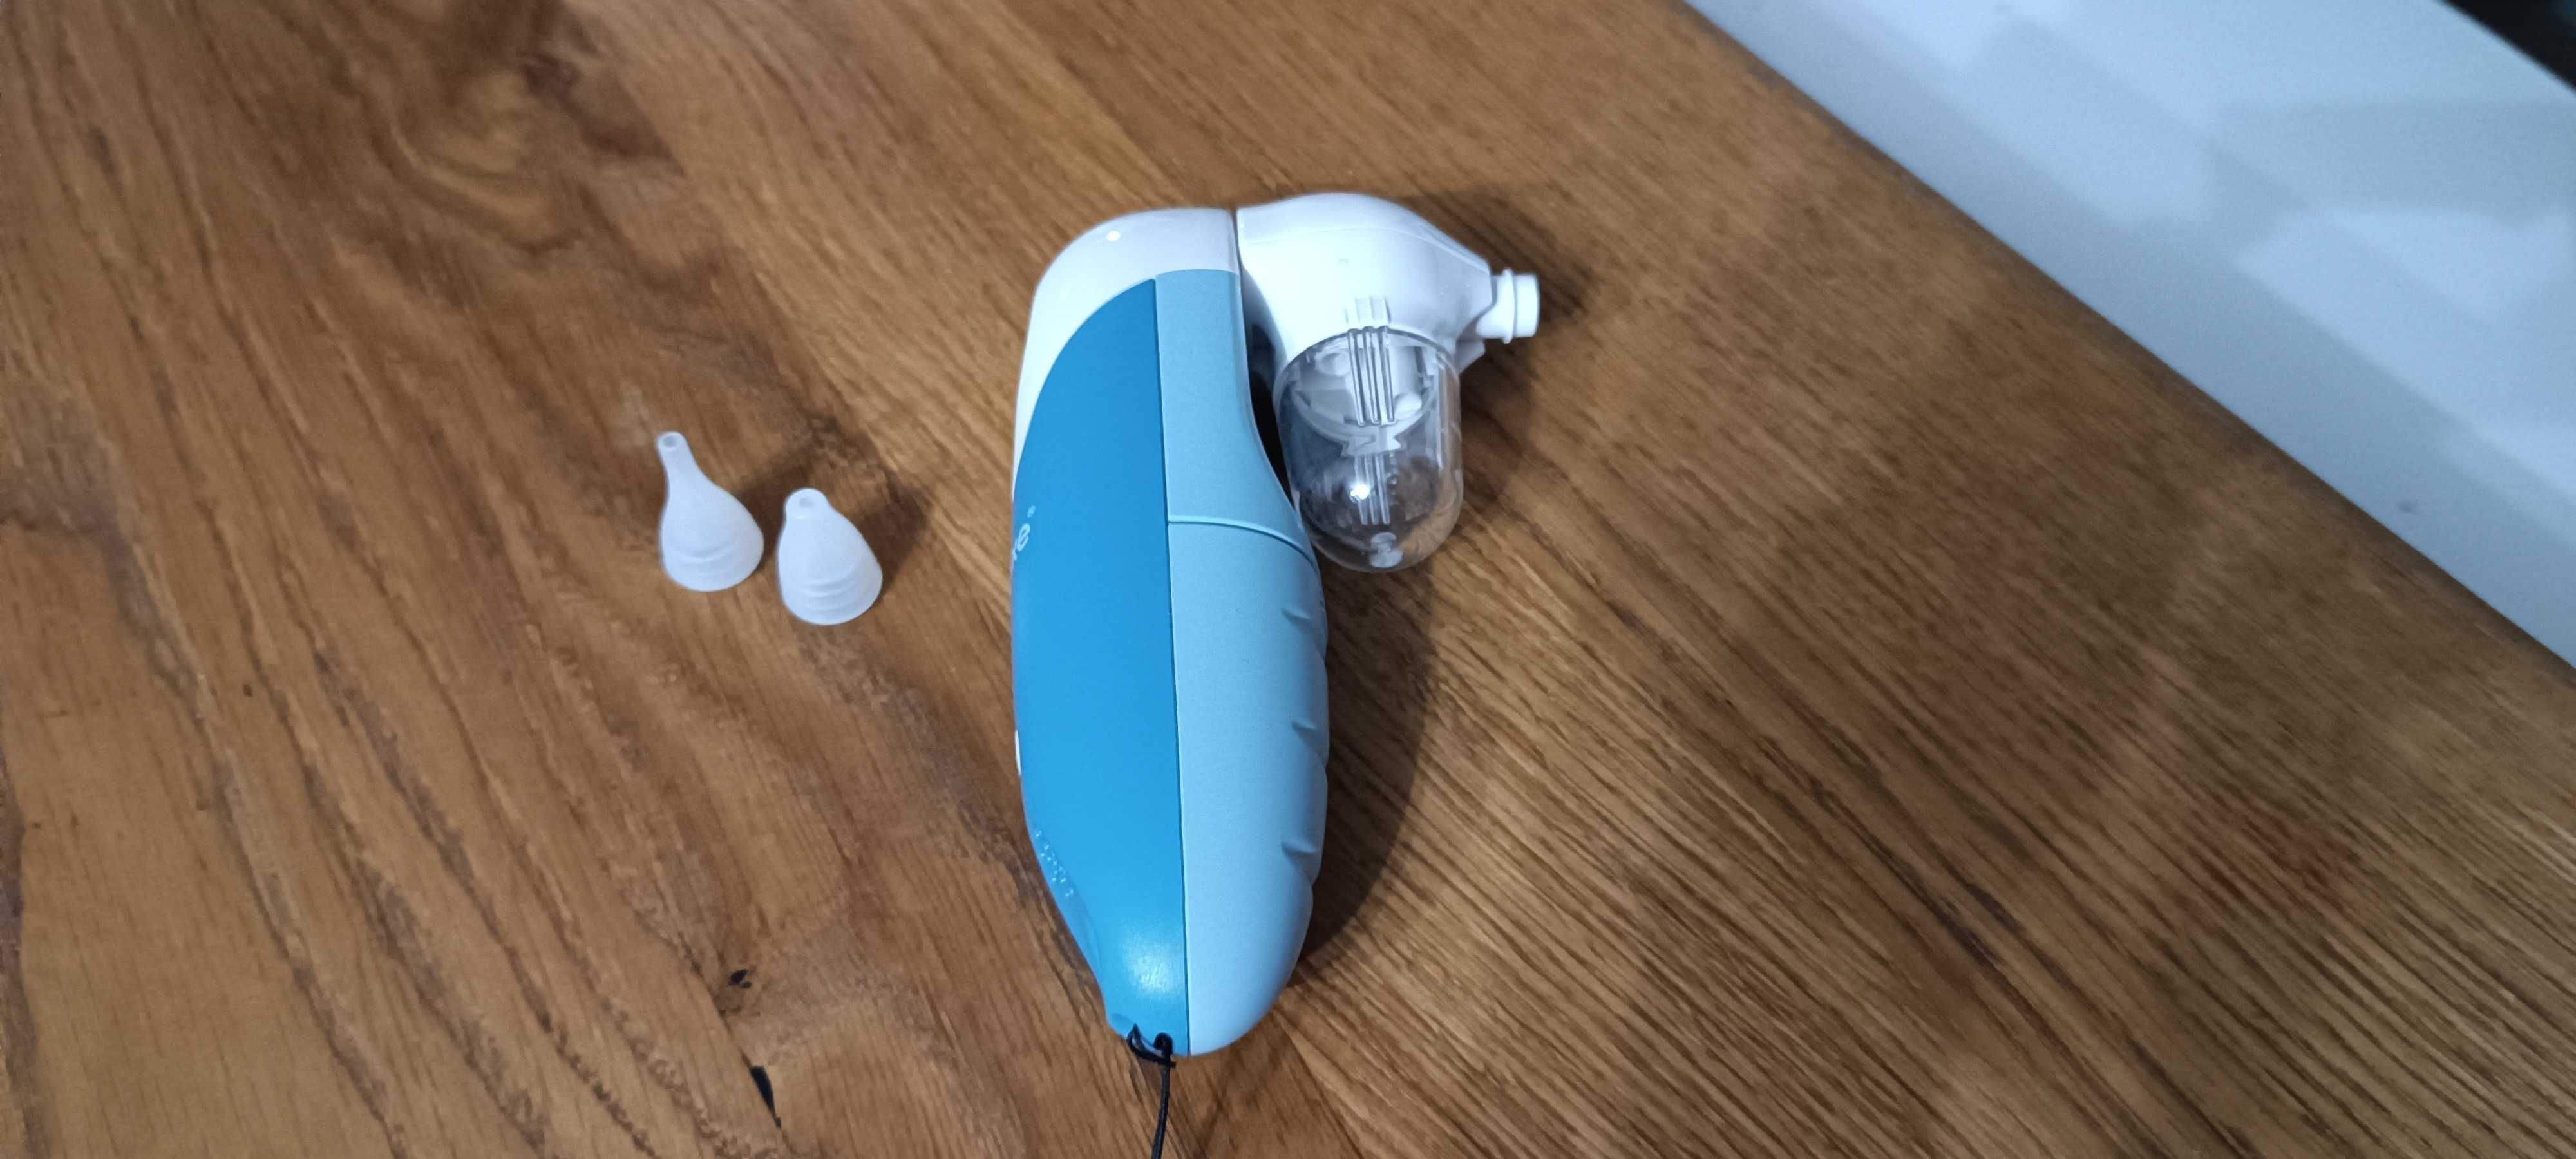 Haxe elektroniczny aspirator do nosa dla dzieci nowy